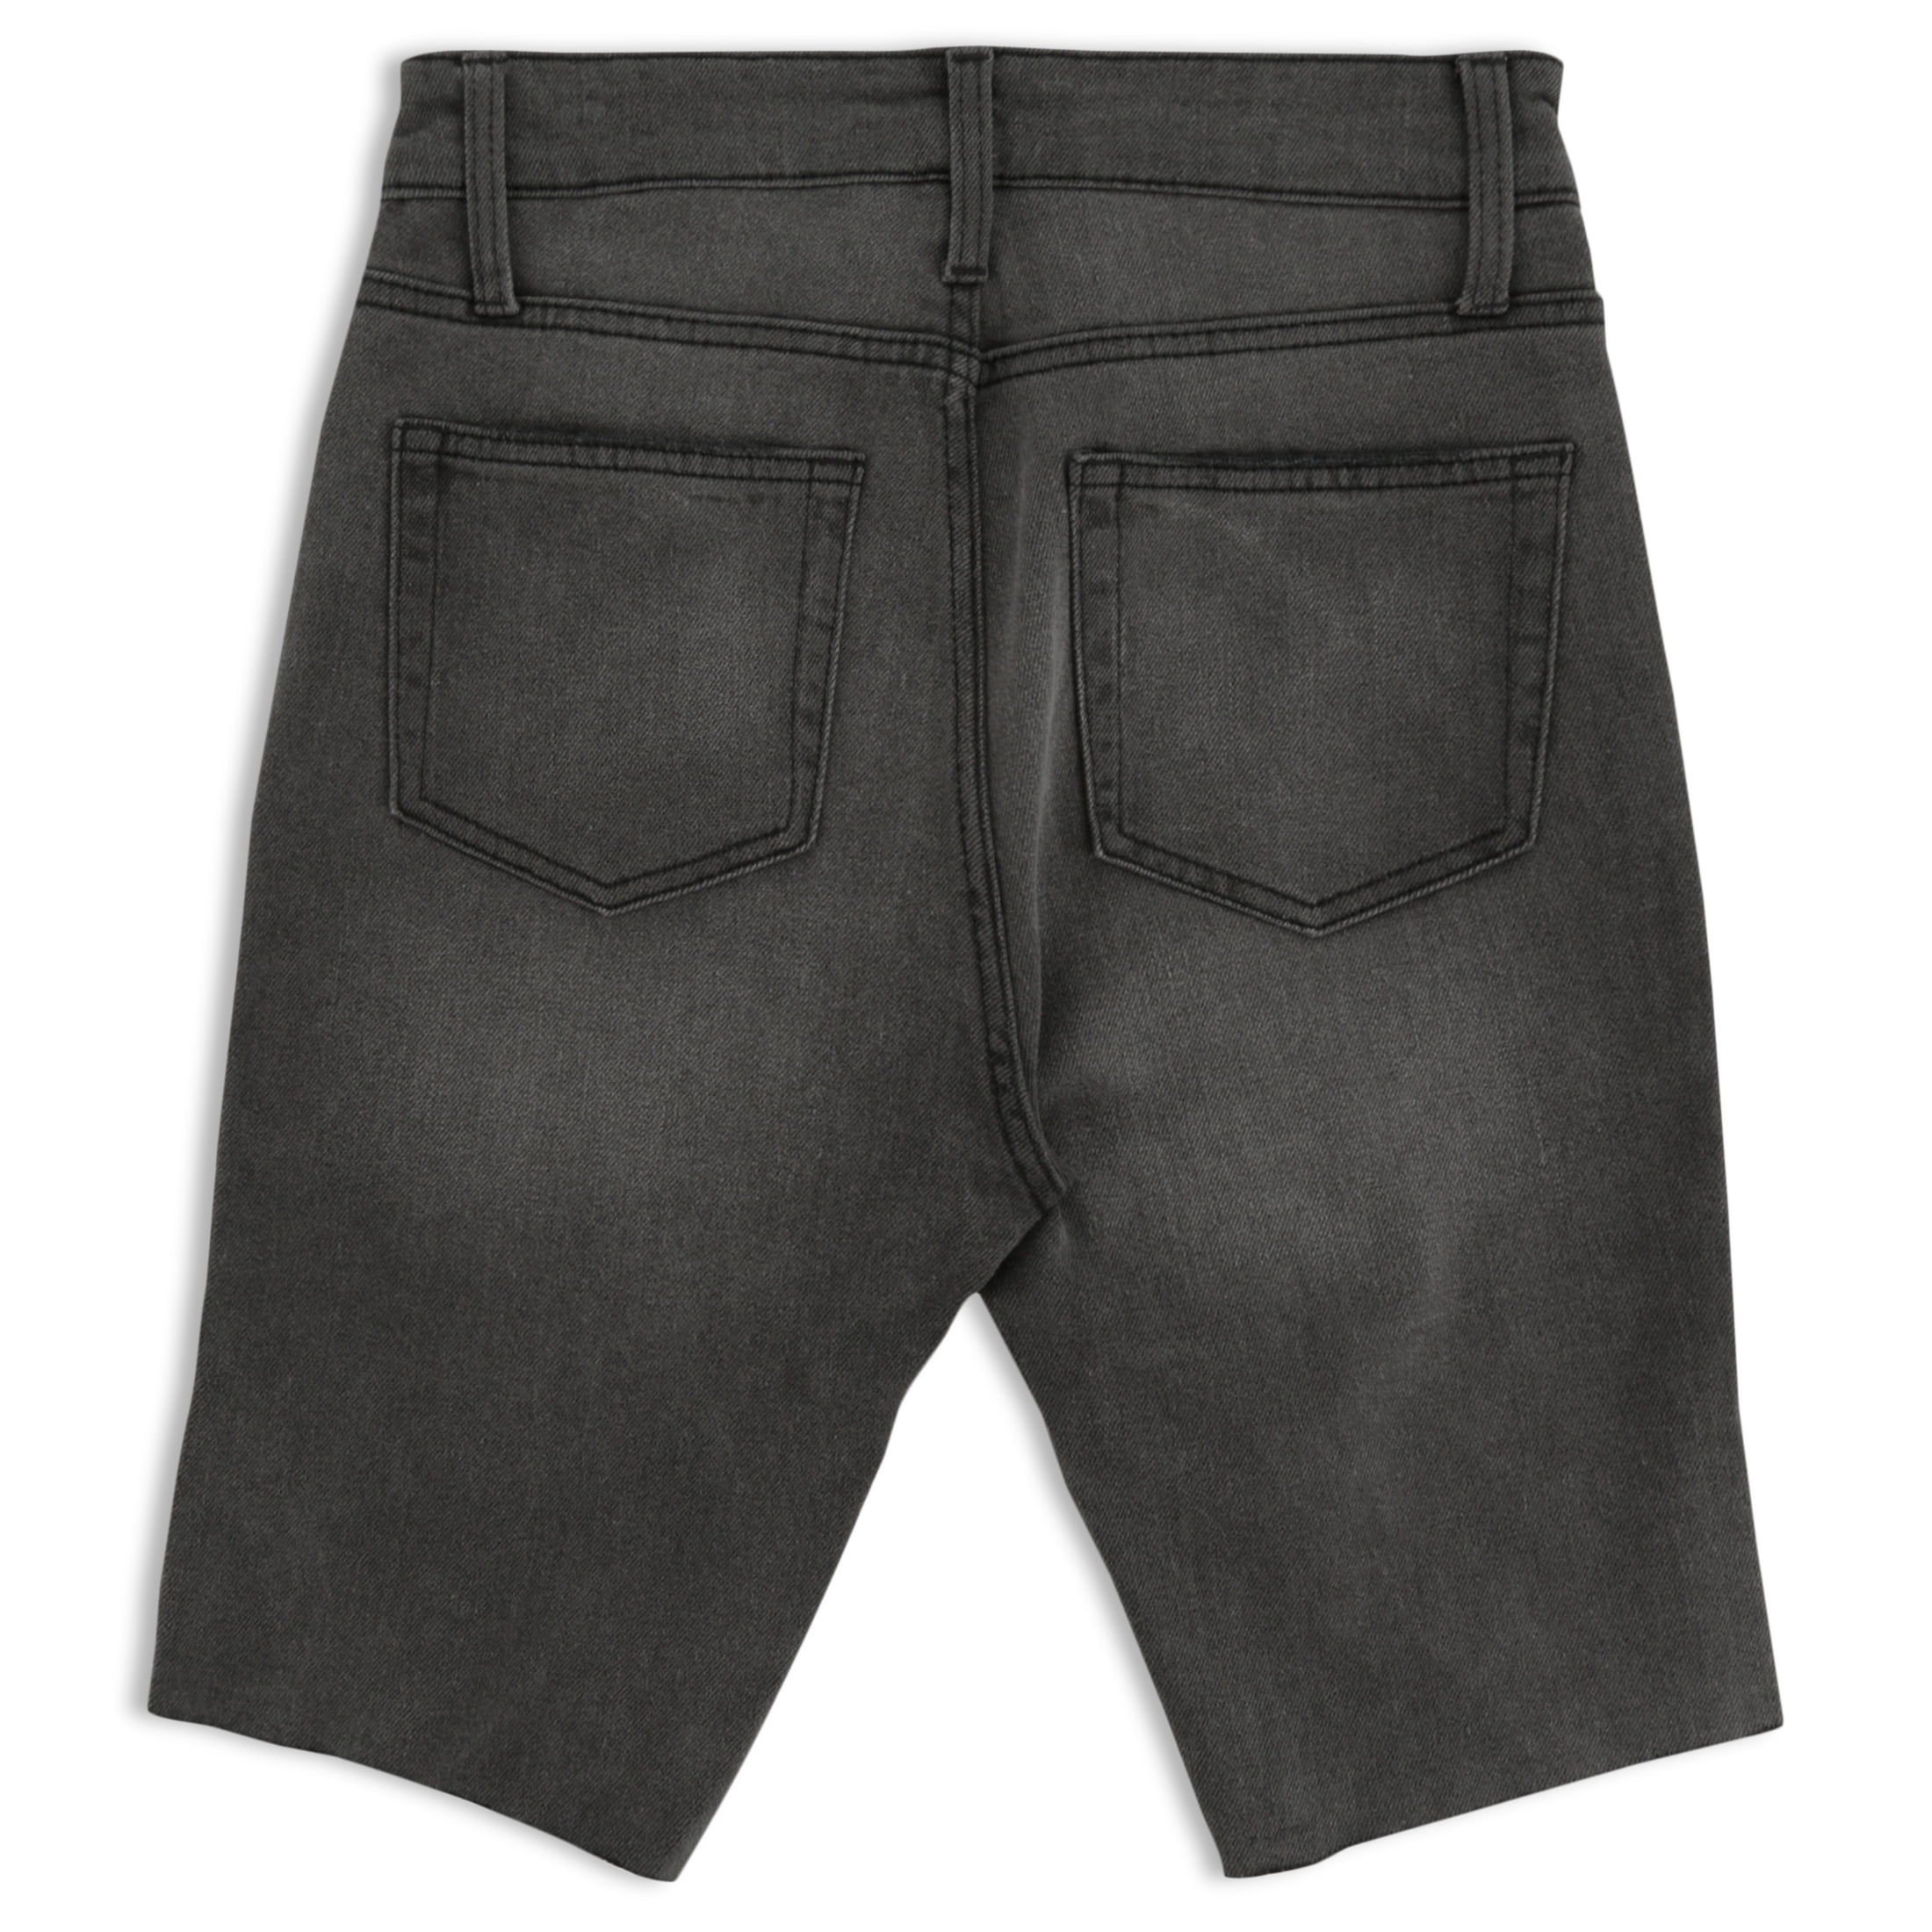 No Boundaries Men’s Denim Shorts - Walmart.com